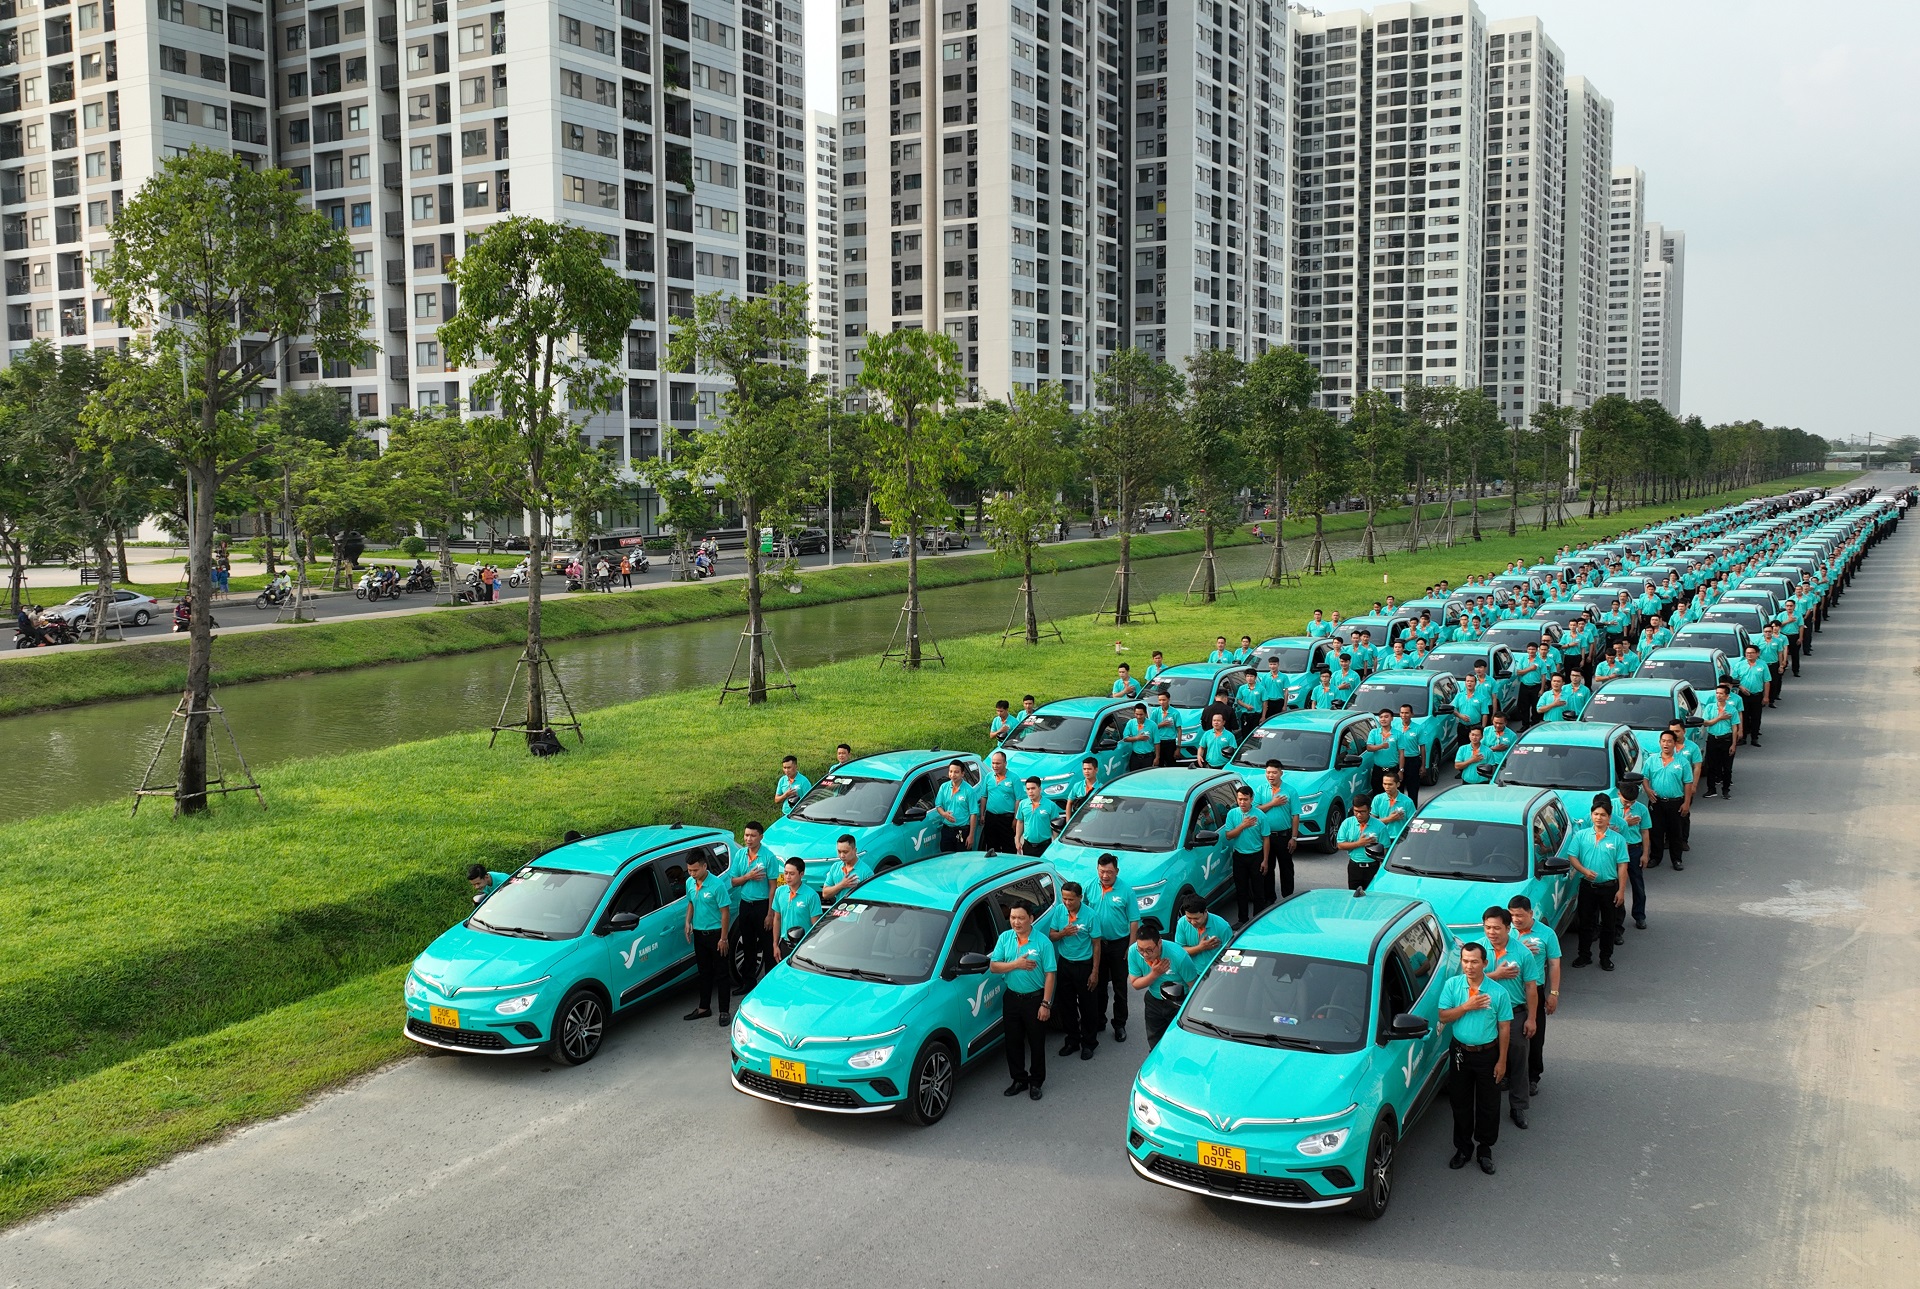 taxi-xanh-gsm-chinh-thuc-co-mat-tai-phu-quoc-4.jpeg (1.23 MB)